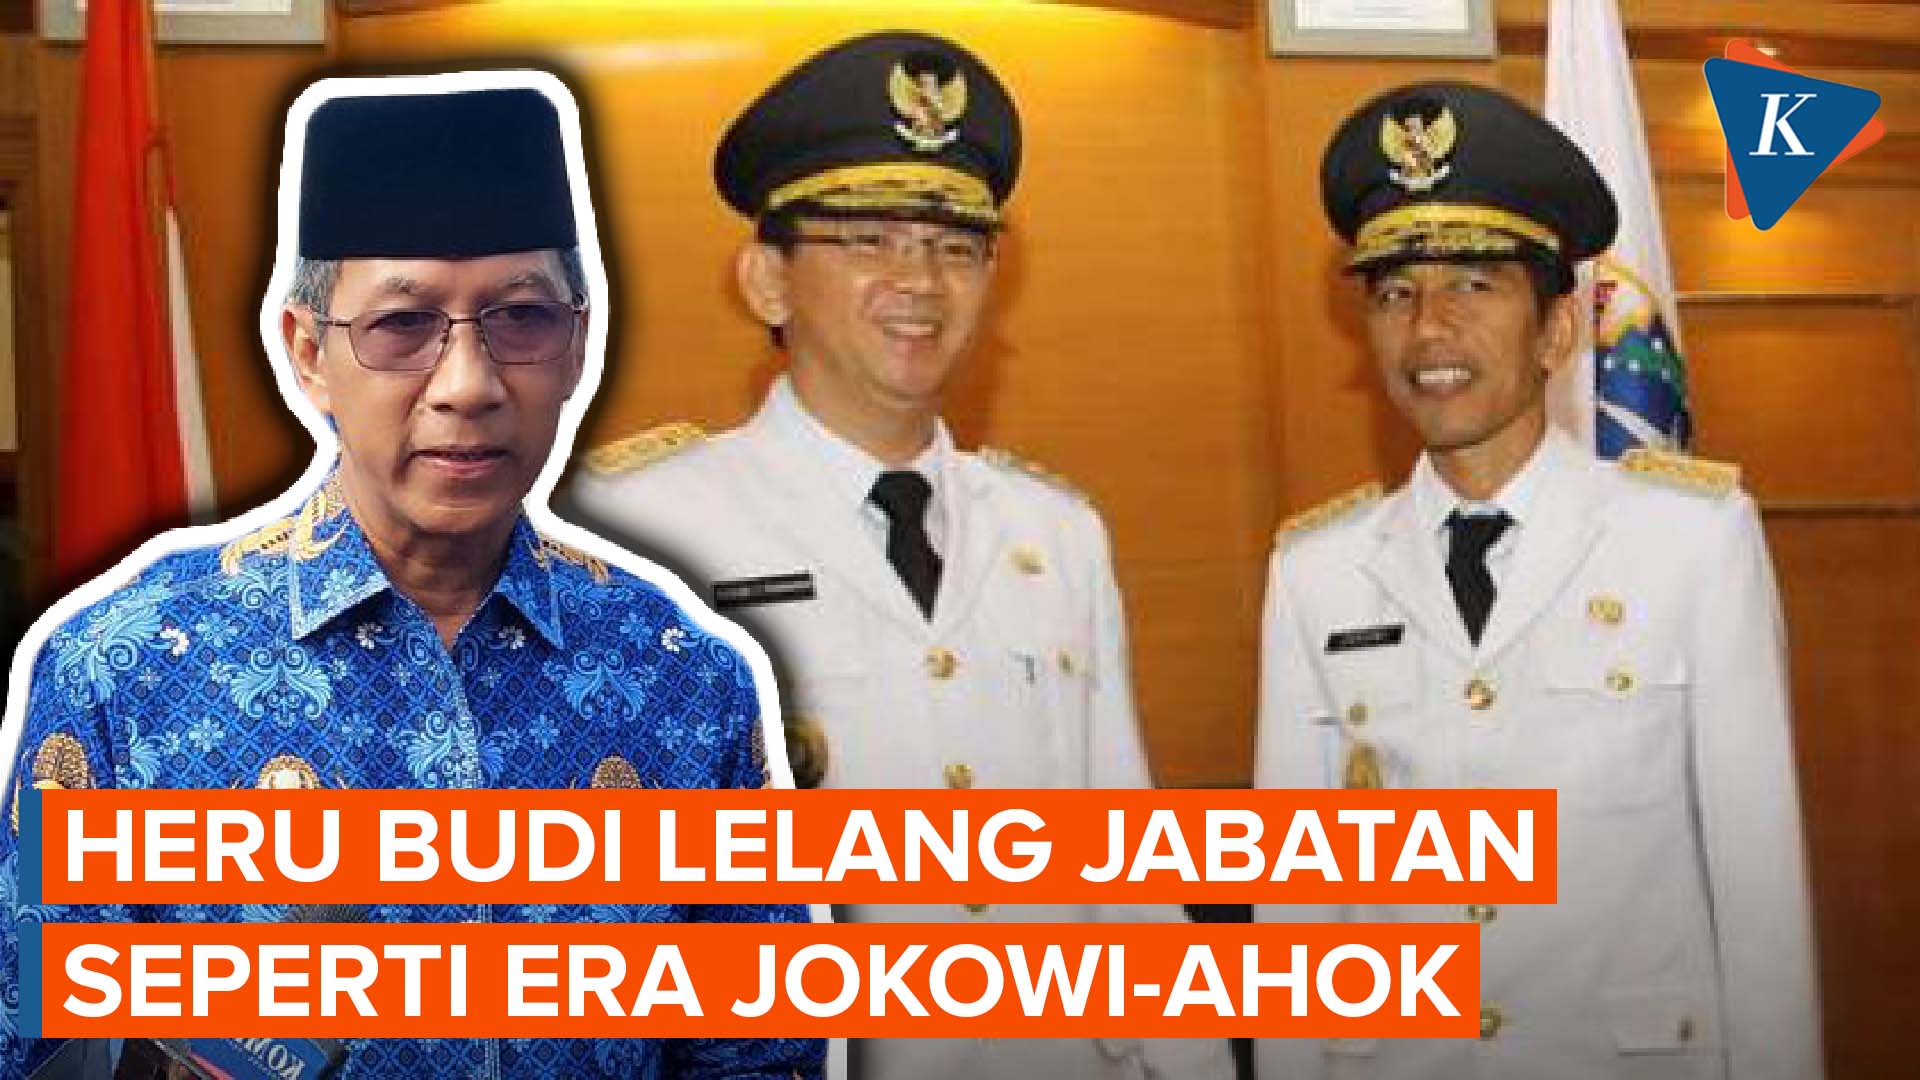 Heru Budi Bangkitkan Lagi Lelang Jabatan Seperti Era Jokowi-Ahok